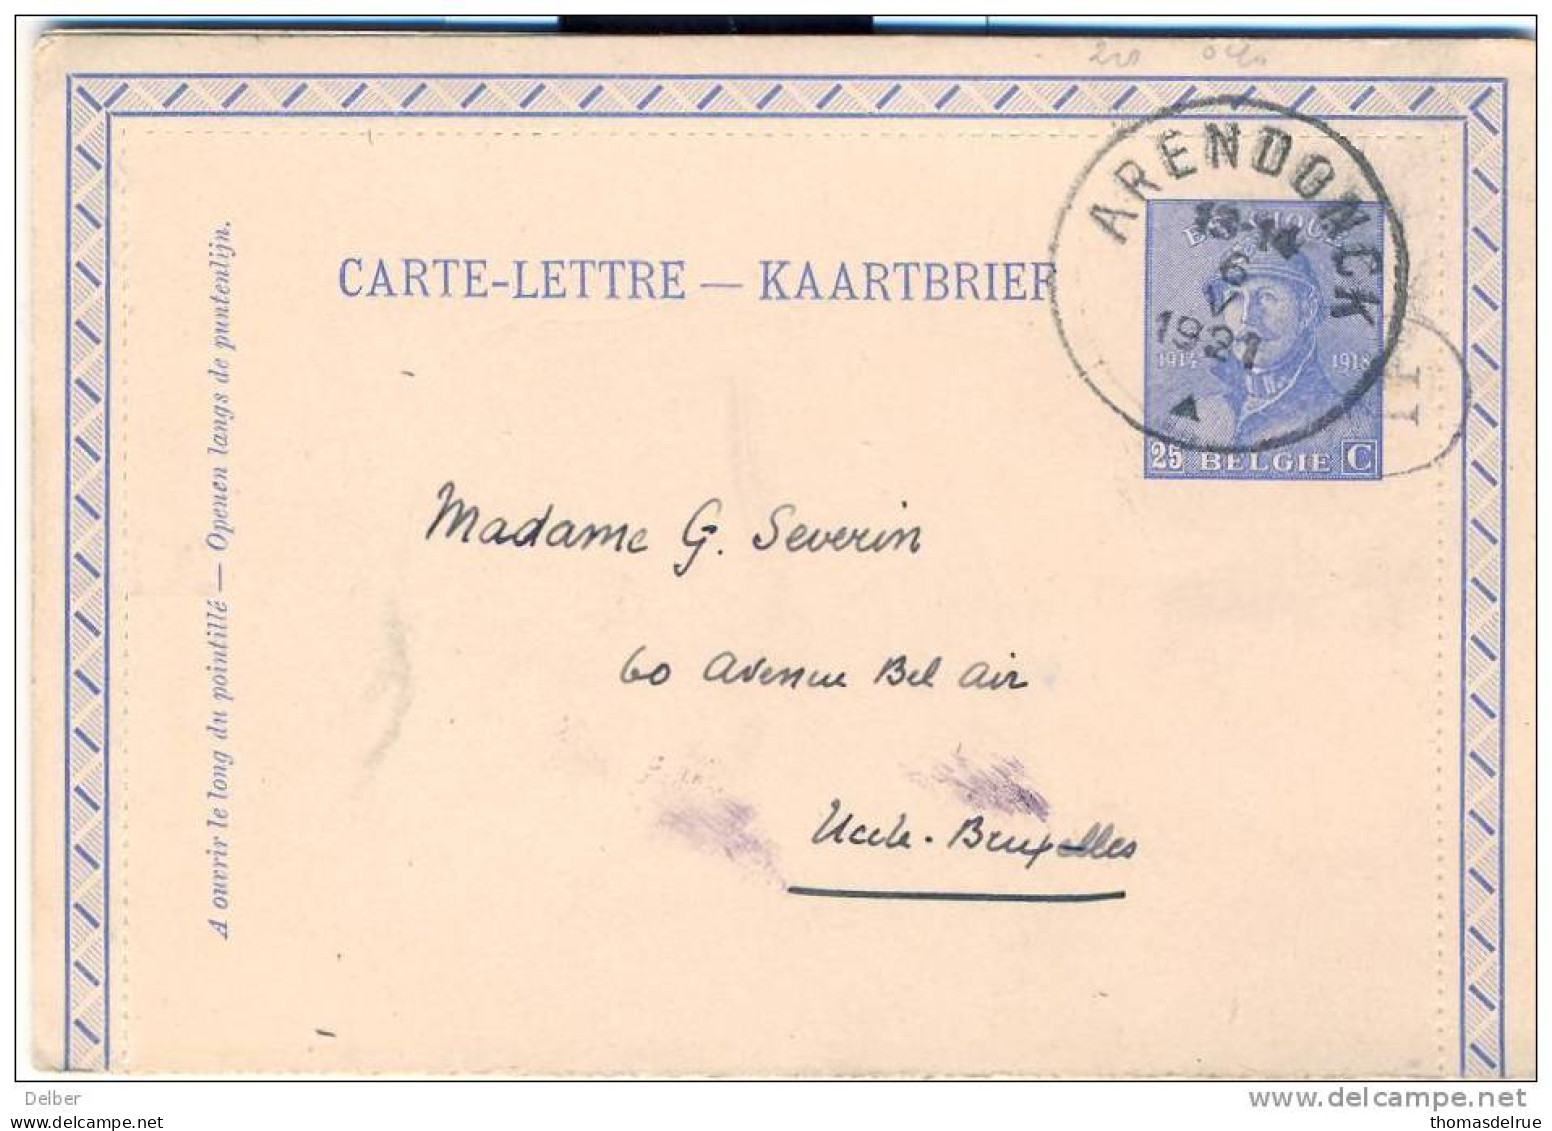 X_ik818_CARTE-LETTRE ---KAARTBRIEF: 25 Ct: ARENDONCK  ^  1921 > Uccles- Bruxelles - Carte-Lettere